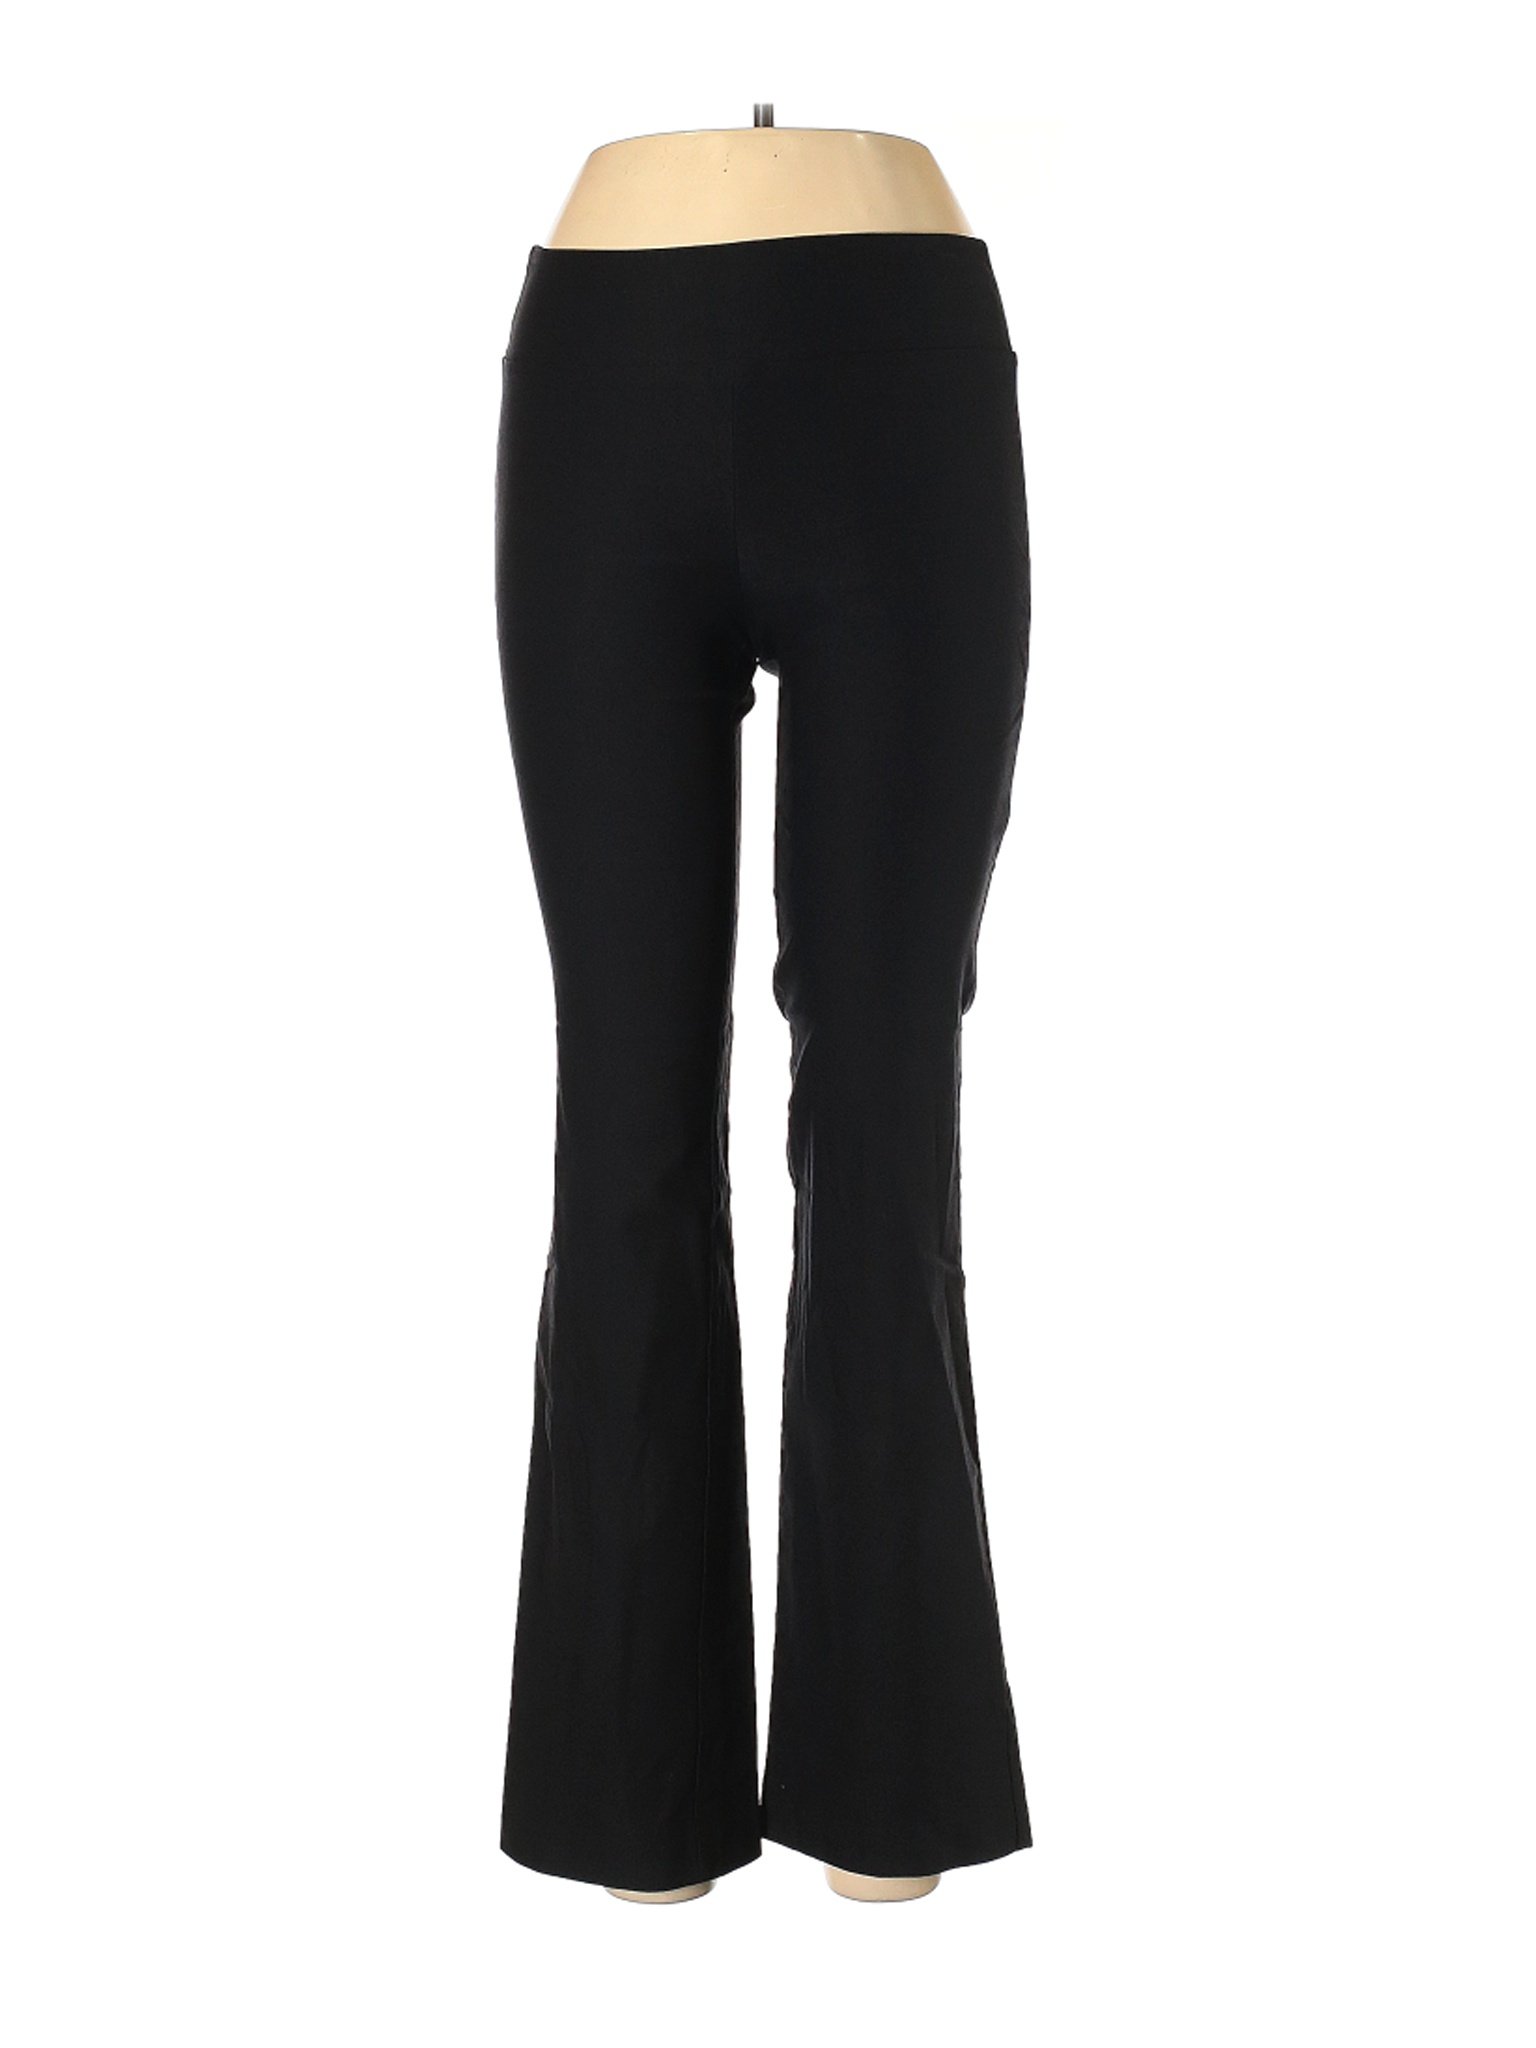 Iz Byer Solid Black Dress Pants Size L - 56% off | thredUP